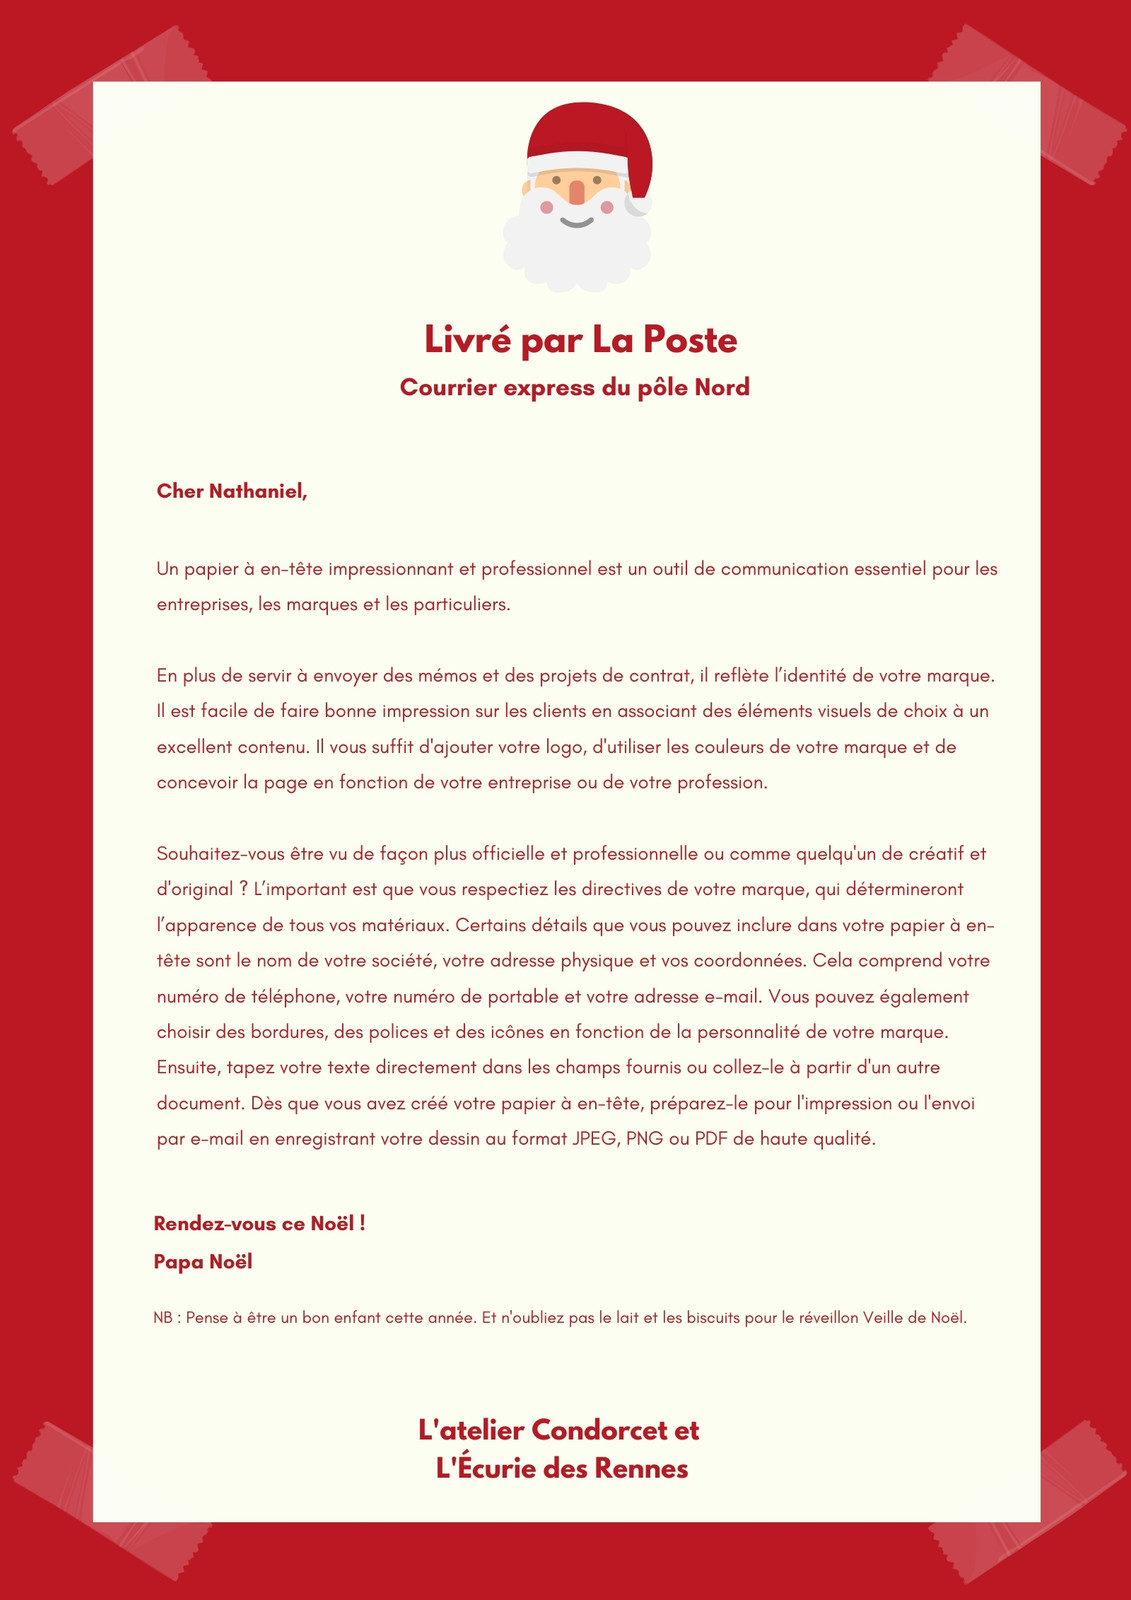 Lettre du Père Noël personnalisée, réponse officielle au prénom de l'enfant  – Mimosa Chroma